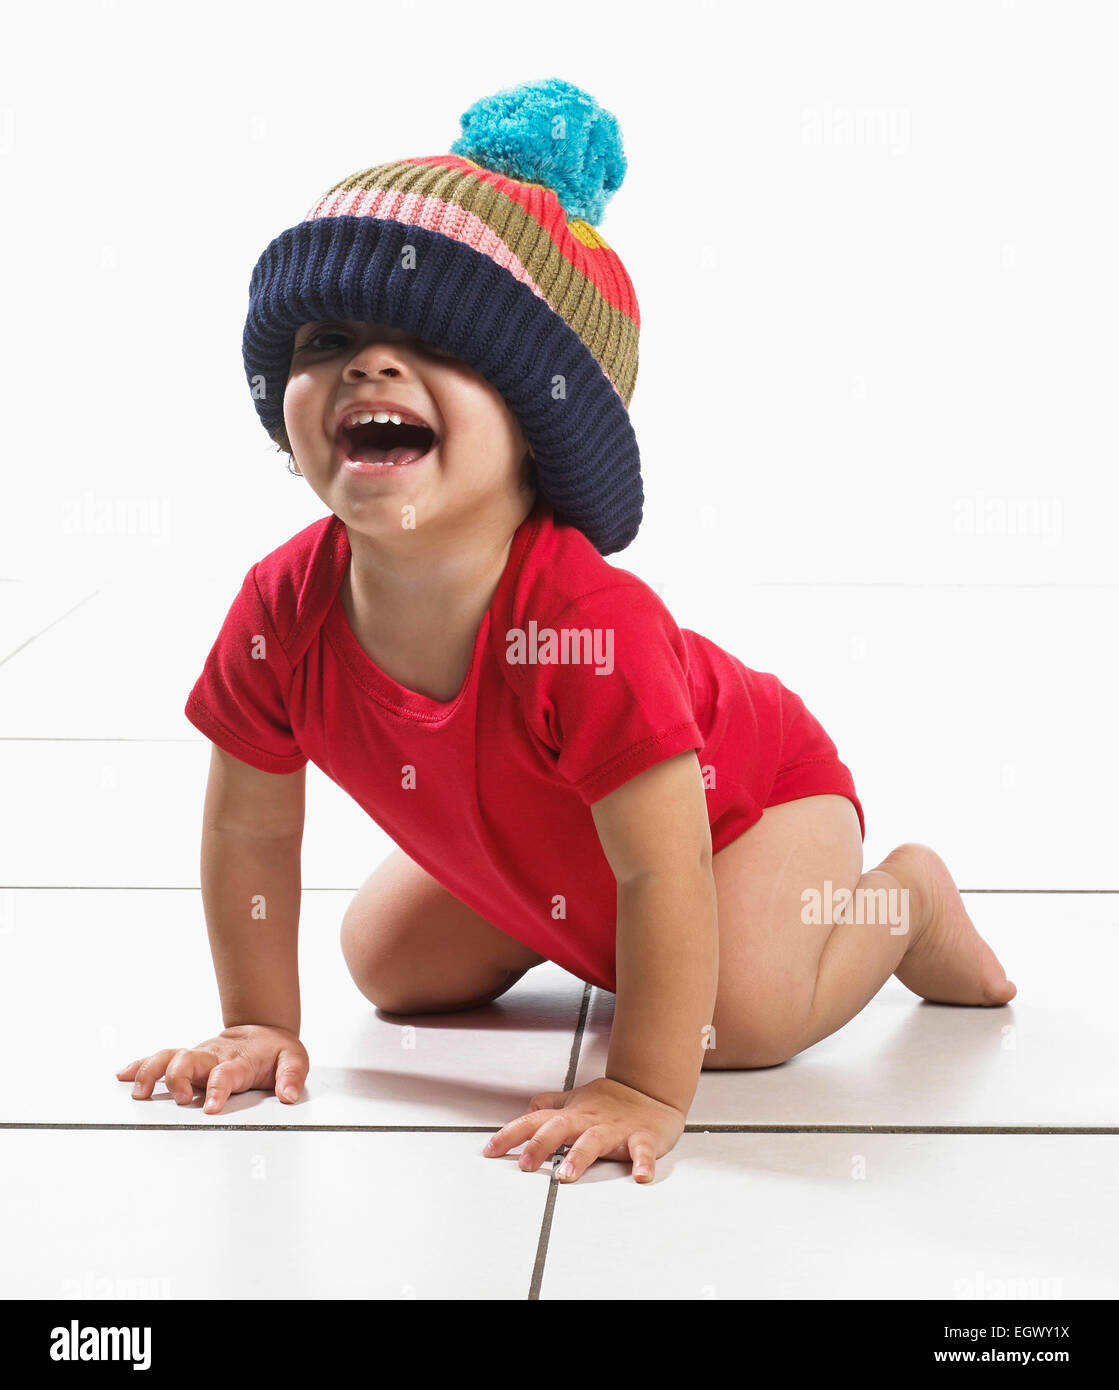 Ragazzo (16 mesi) inginocchiati sul pavimento ridendo, indossando il giubbotto e maglia di grandi dimensioni bobble hat Foto Stock